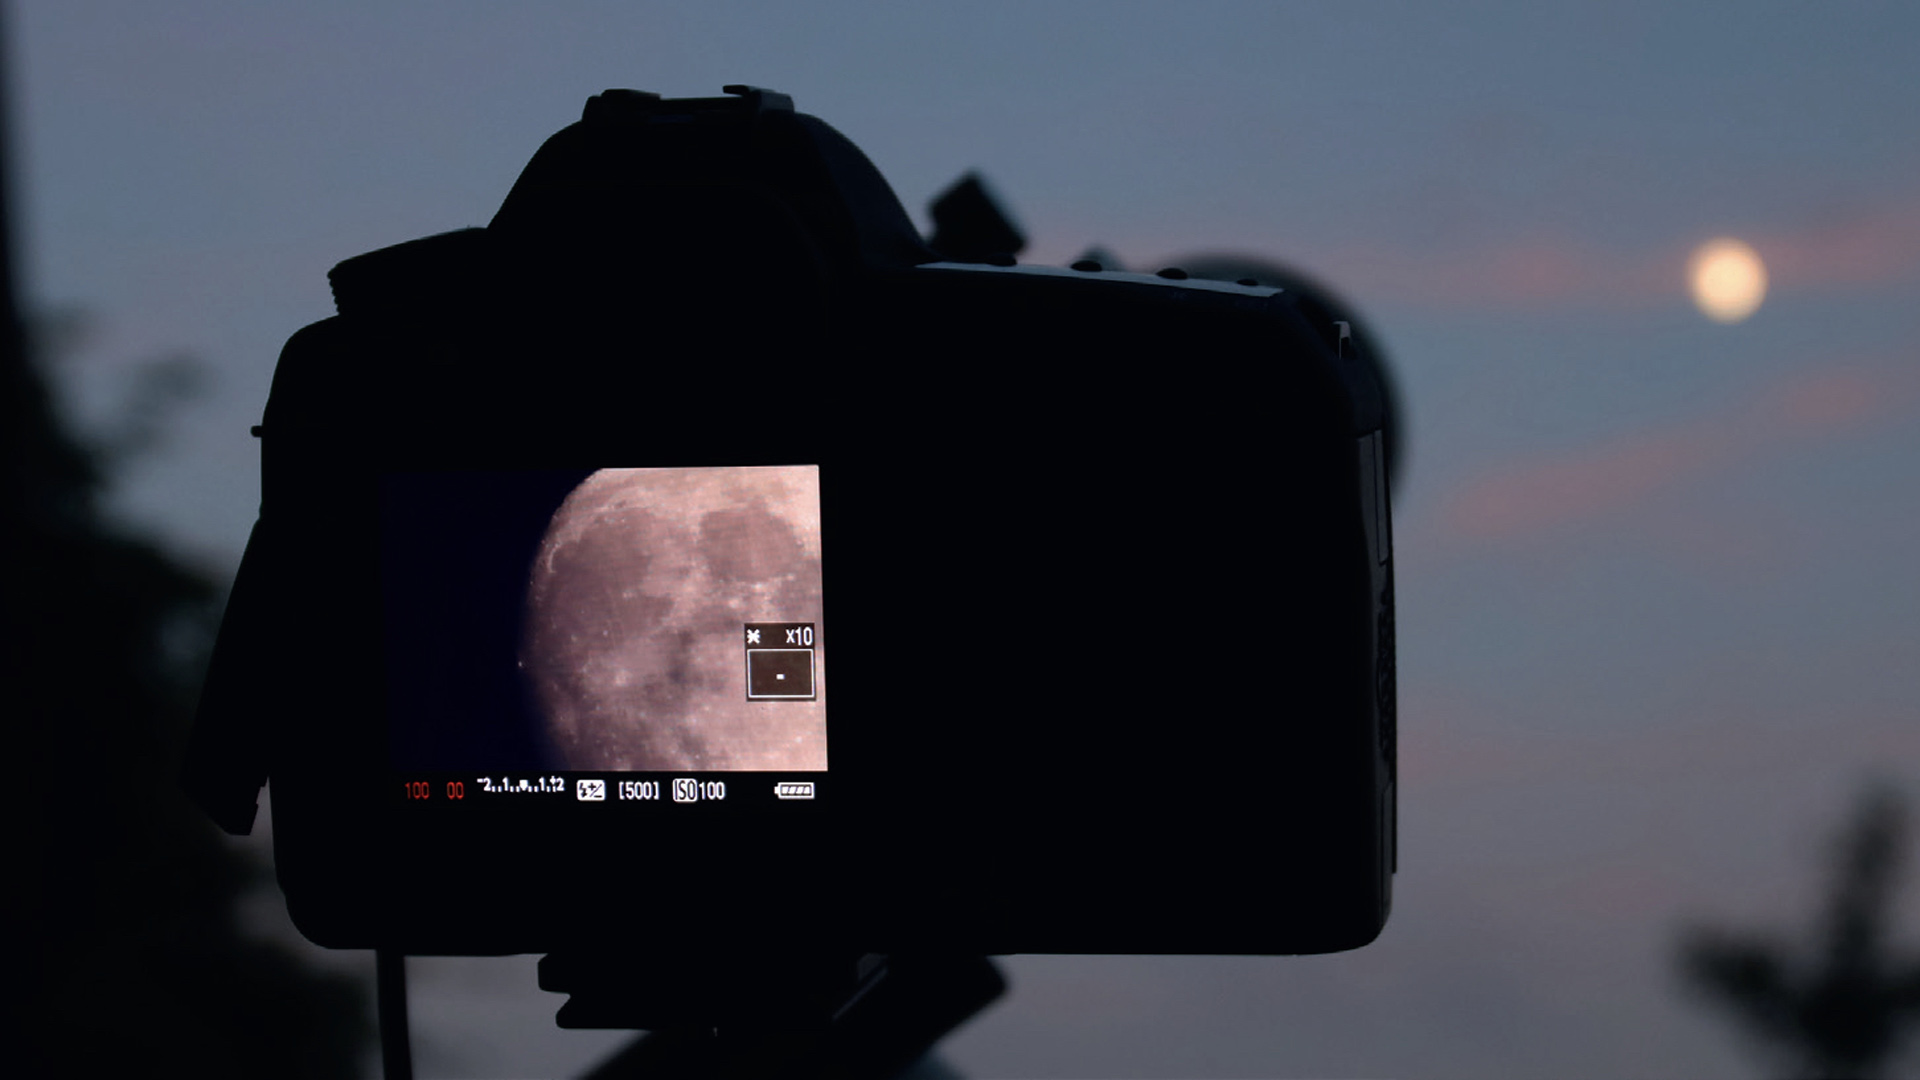 Mondfotografie mit der DSLR am Teleskop. Die Fokussierung des Mondes erfolgt per Live-View
am Kamera-Display. M. Weigand